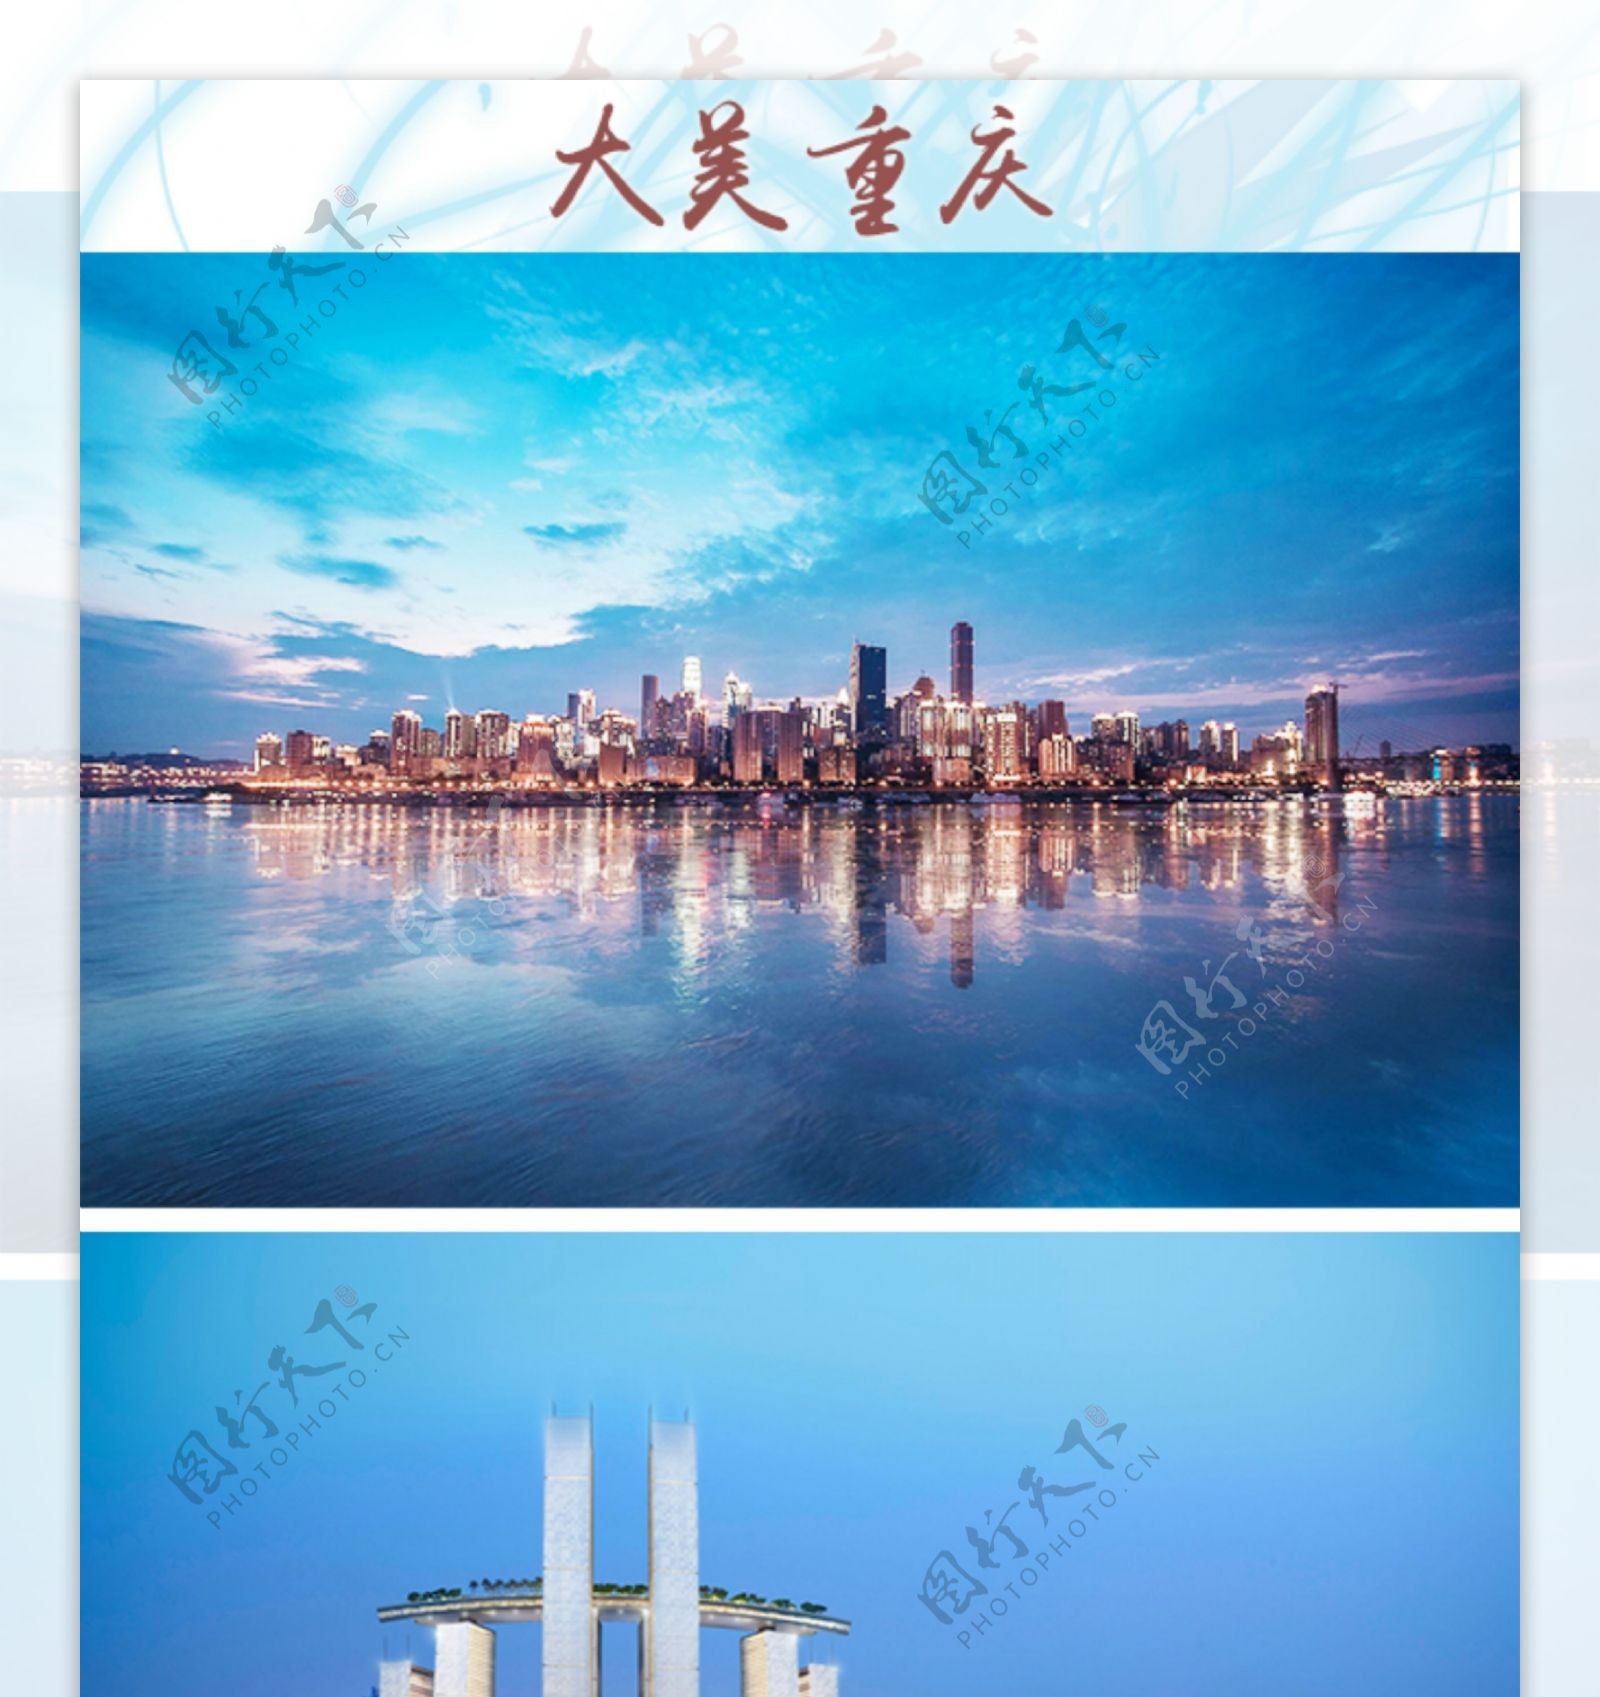 重庆旅游景点介绍照片排版设计